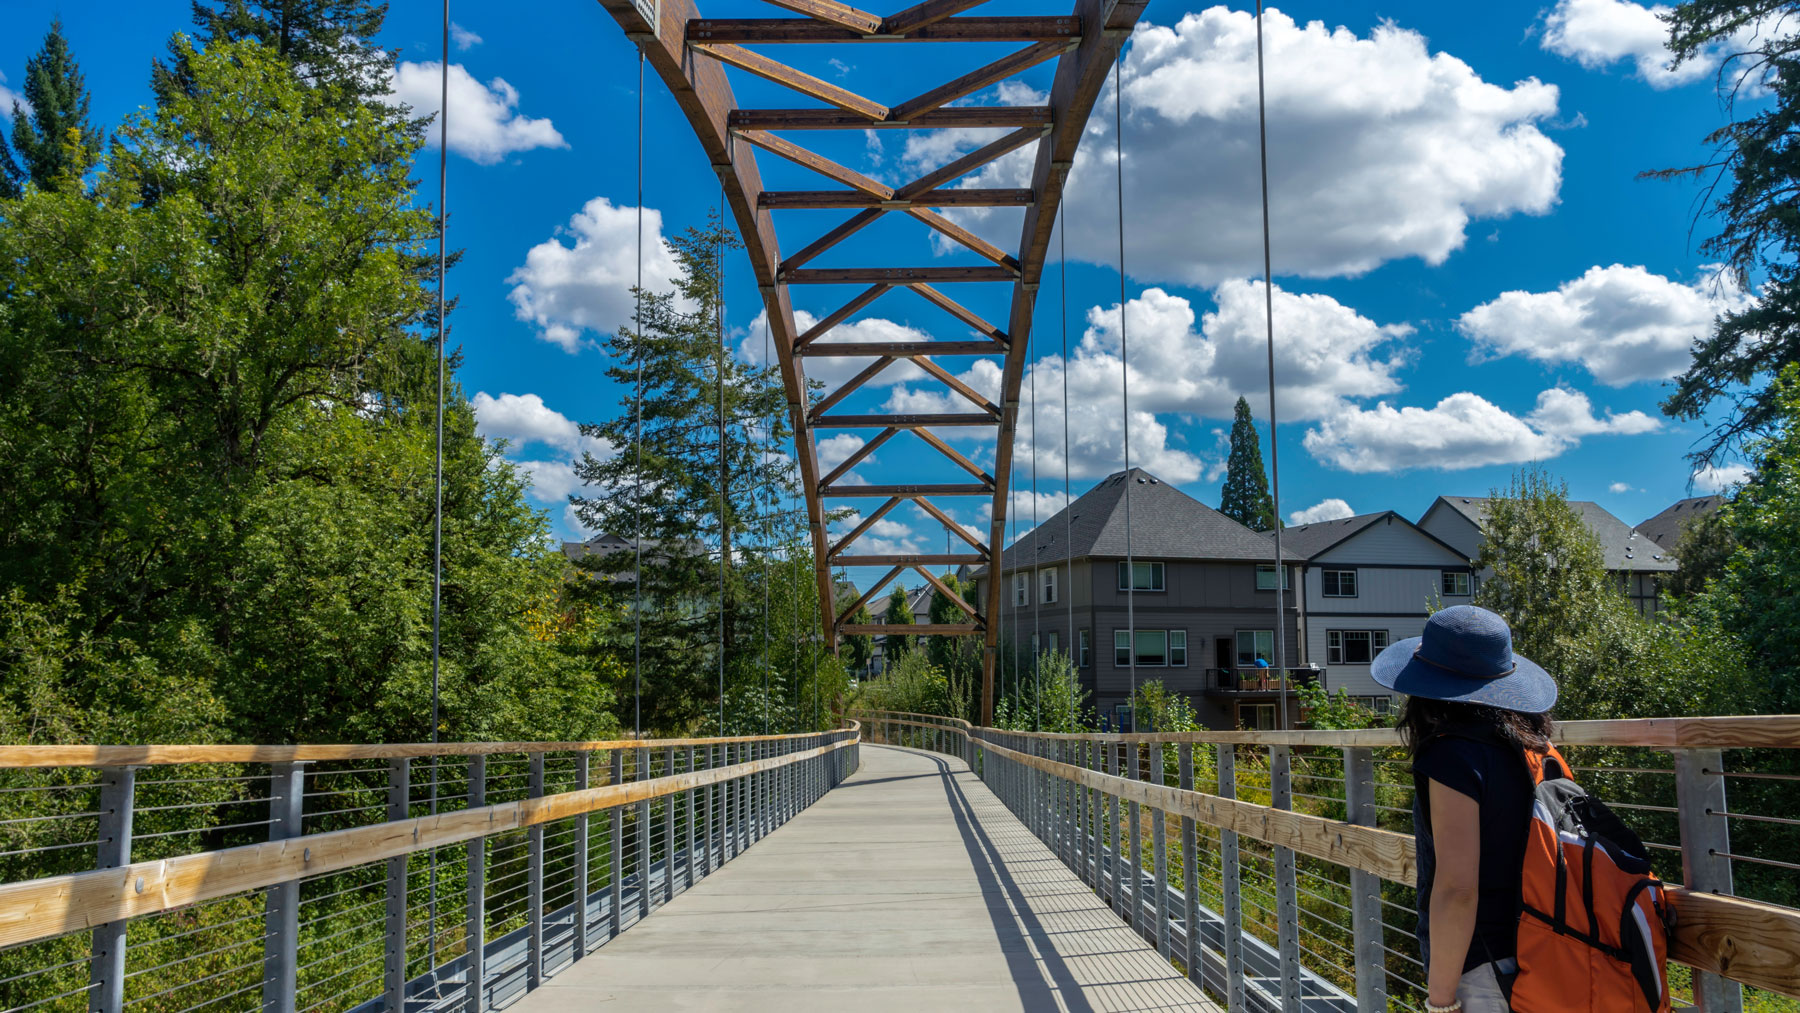 Bridge in Orenco Woods Nature Park, Hillsboro, Oregon